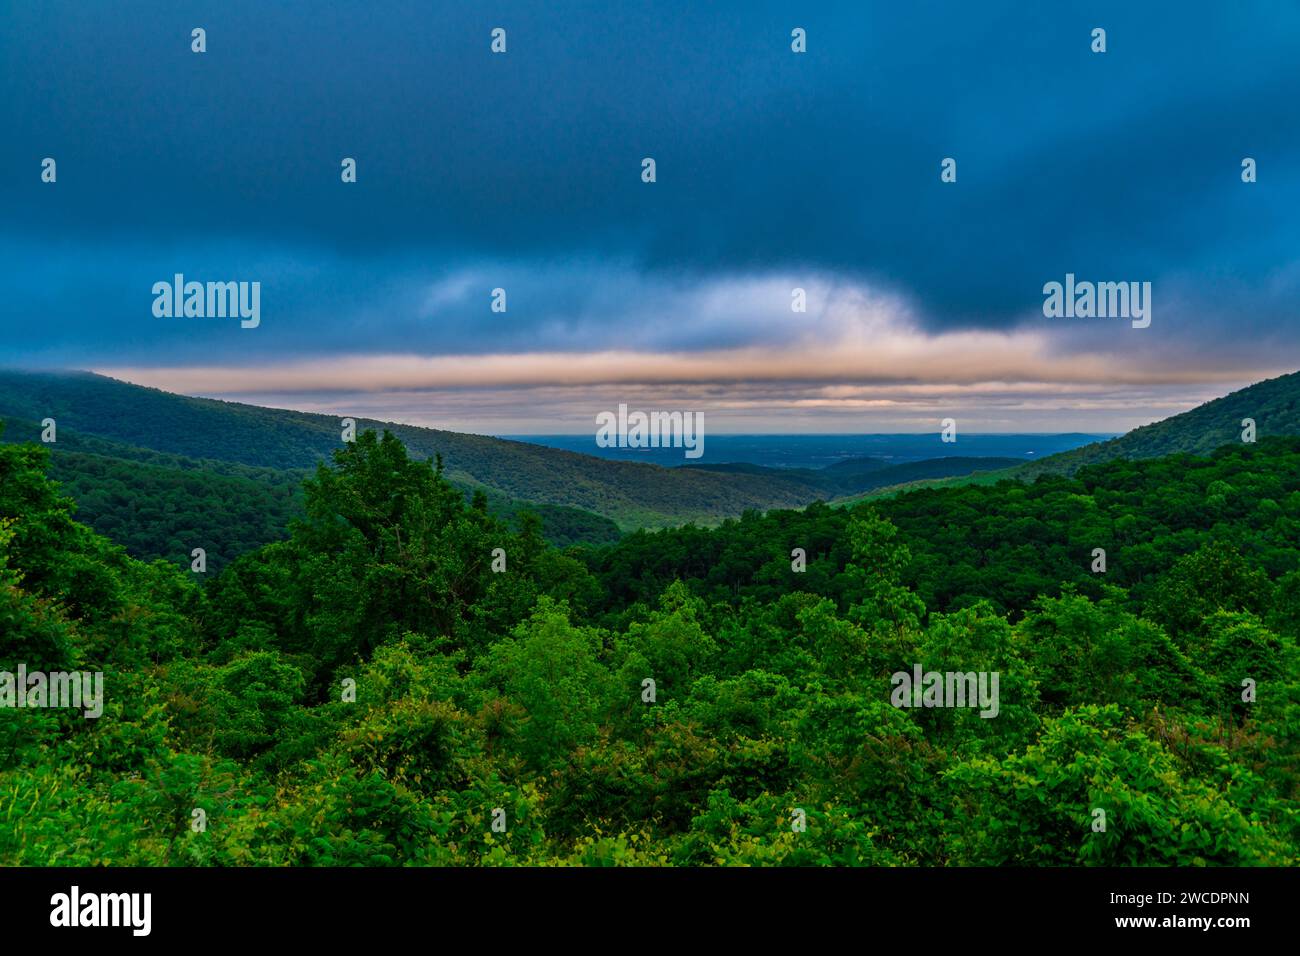 Une vue imprenable sur une vallée verdoyante dans le parc national de Shenandoah, Virginie Banque D'Images